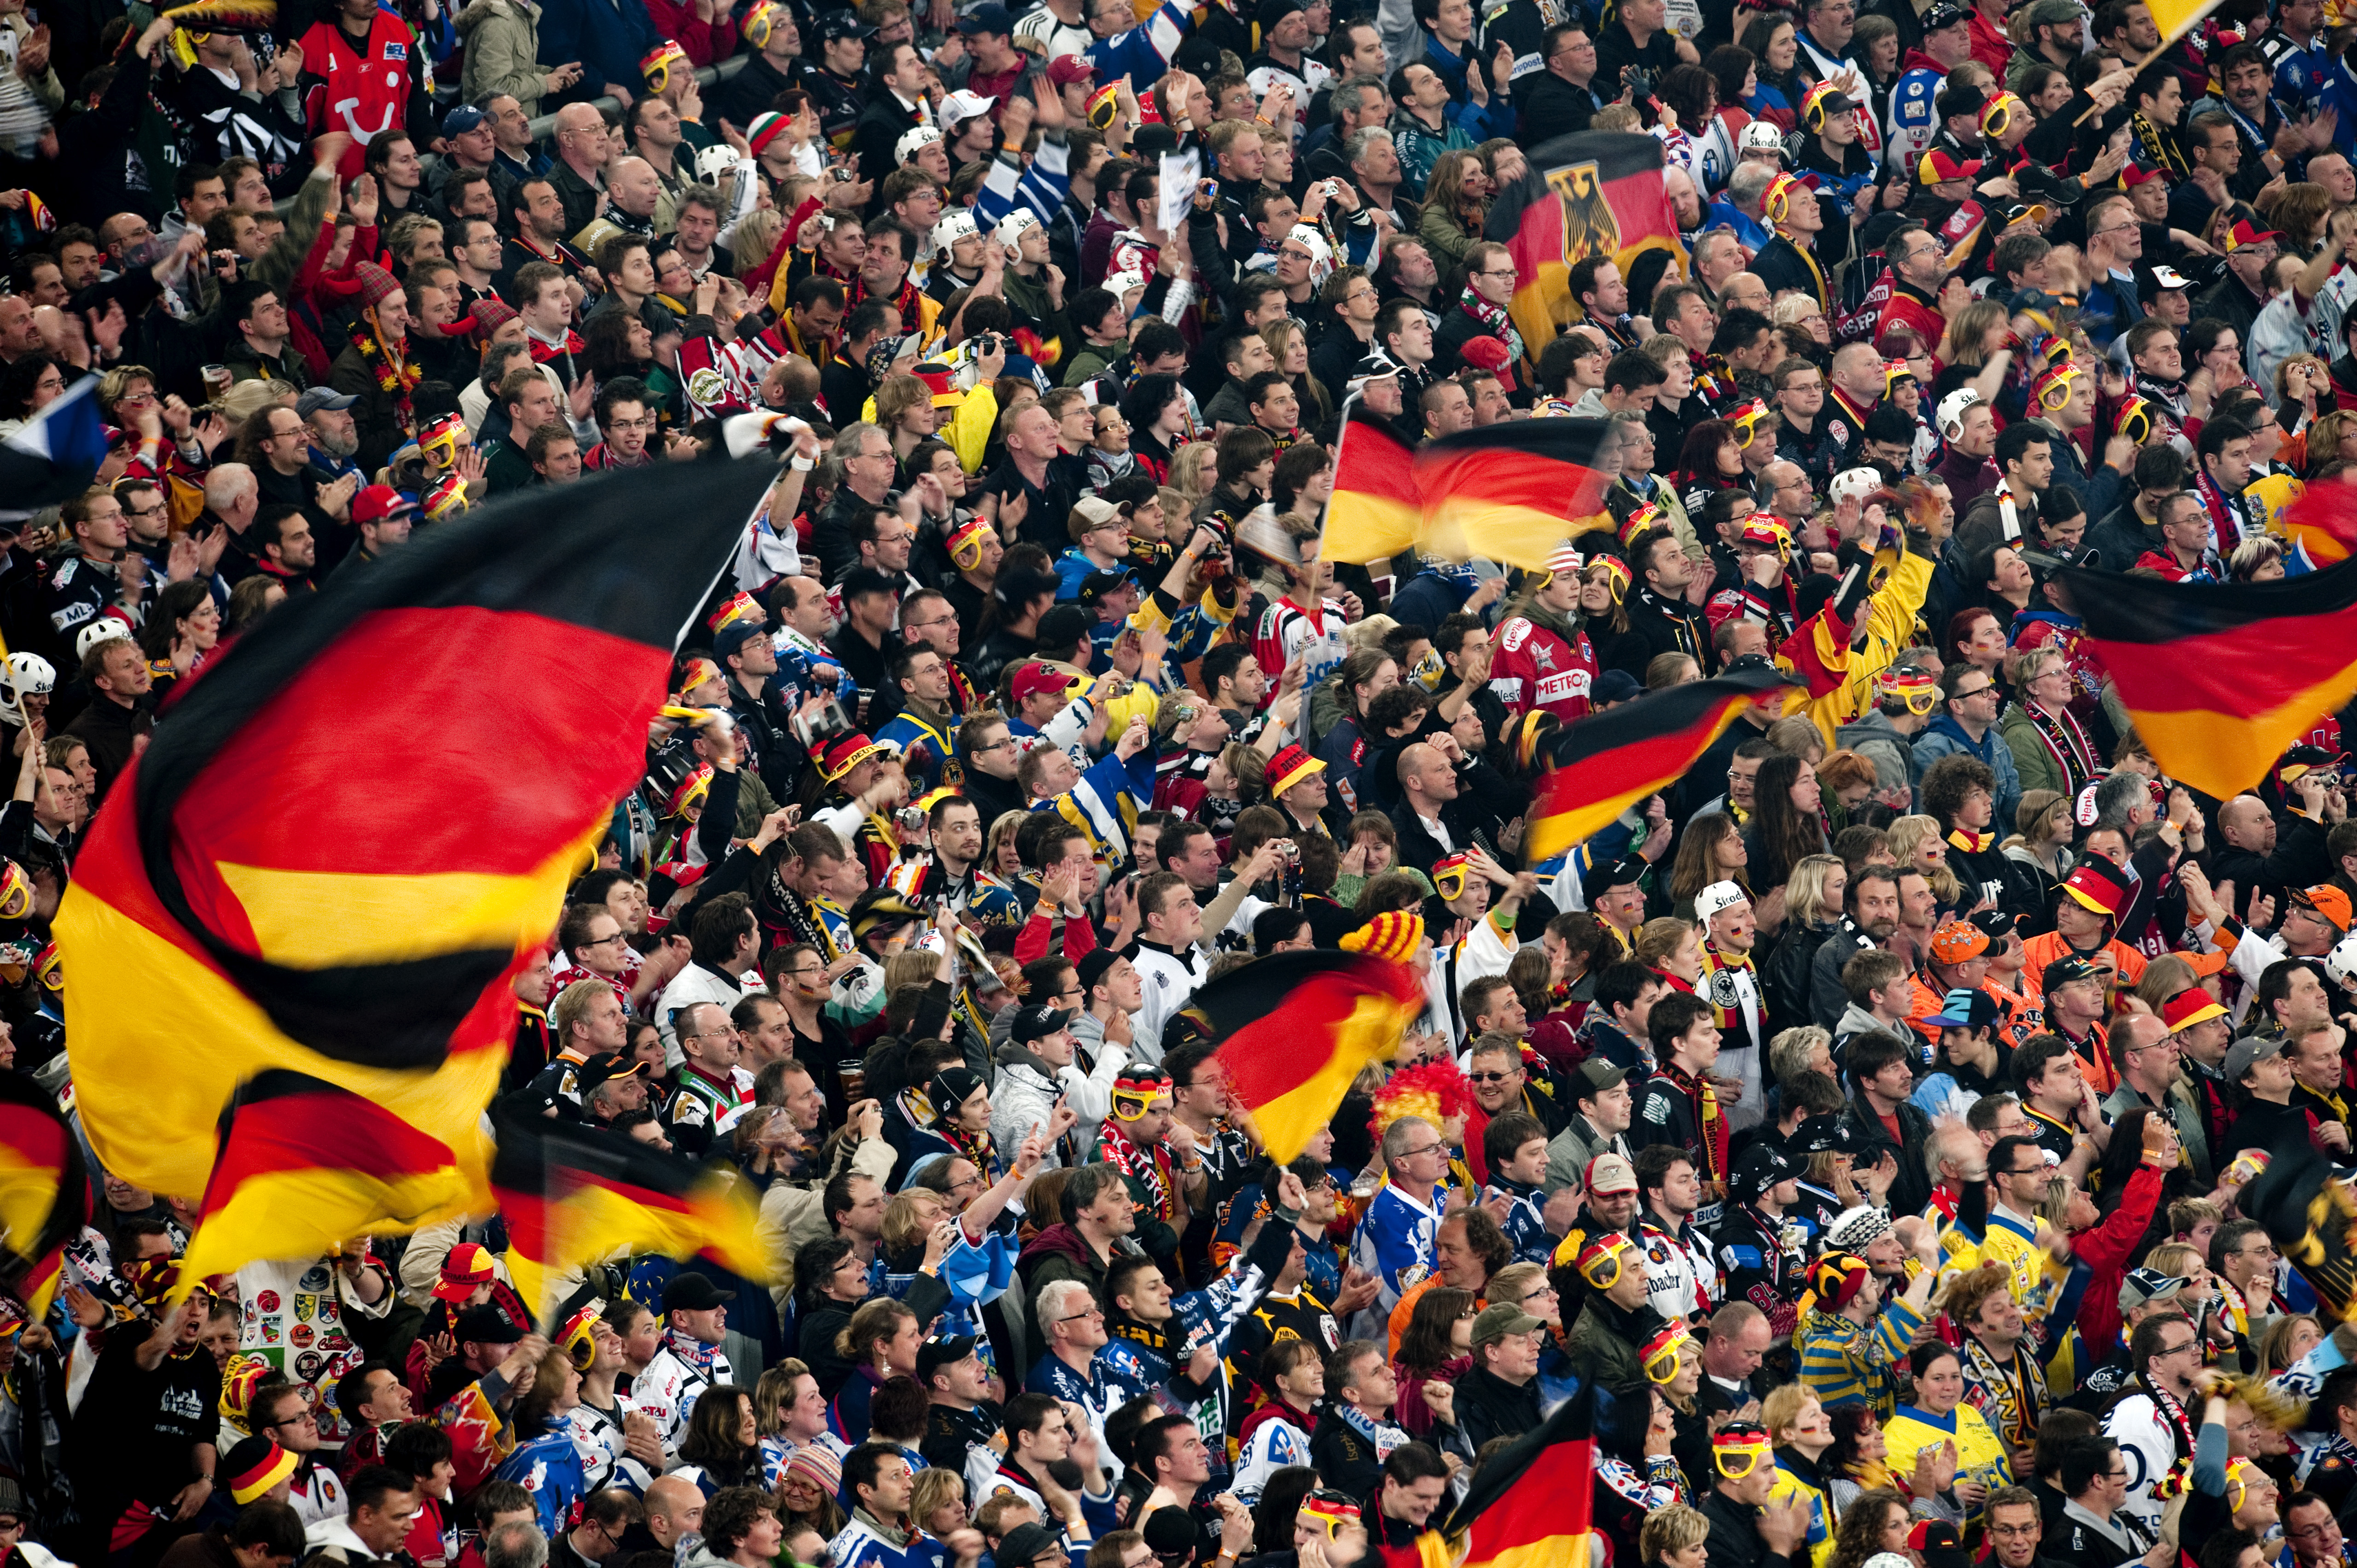 Några av de tyska fansen hade med sig en nazistsymbol till matchen mot Danmark, enligt en observatör.